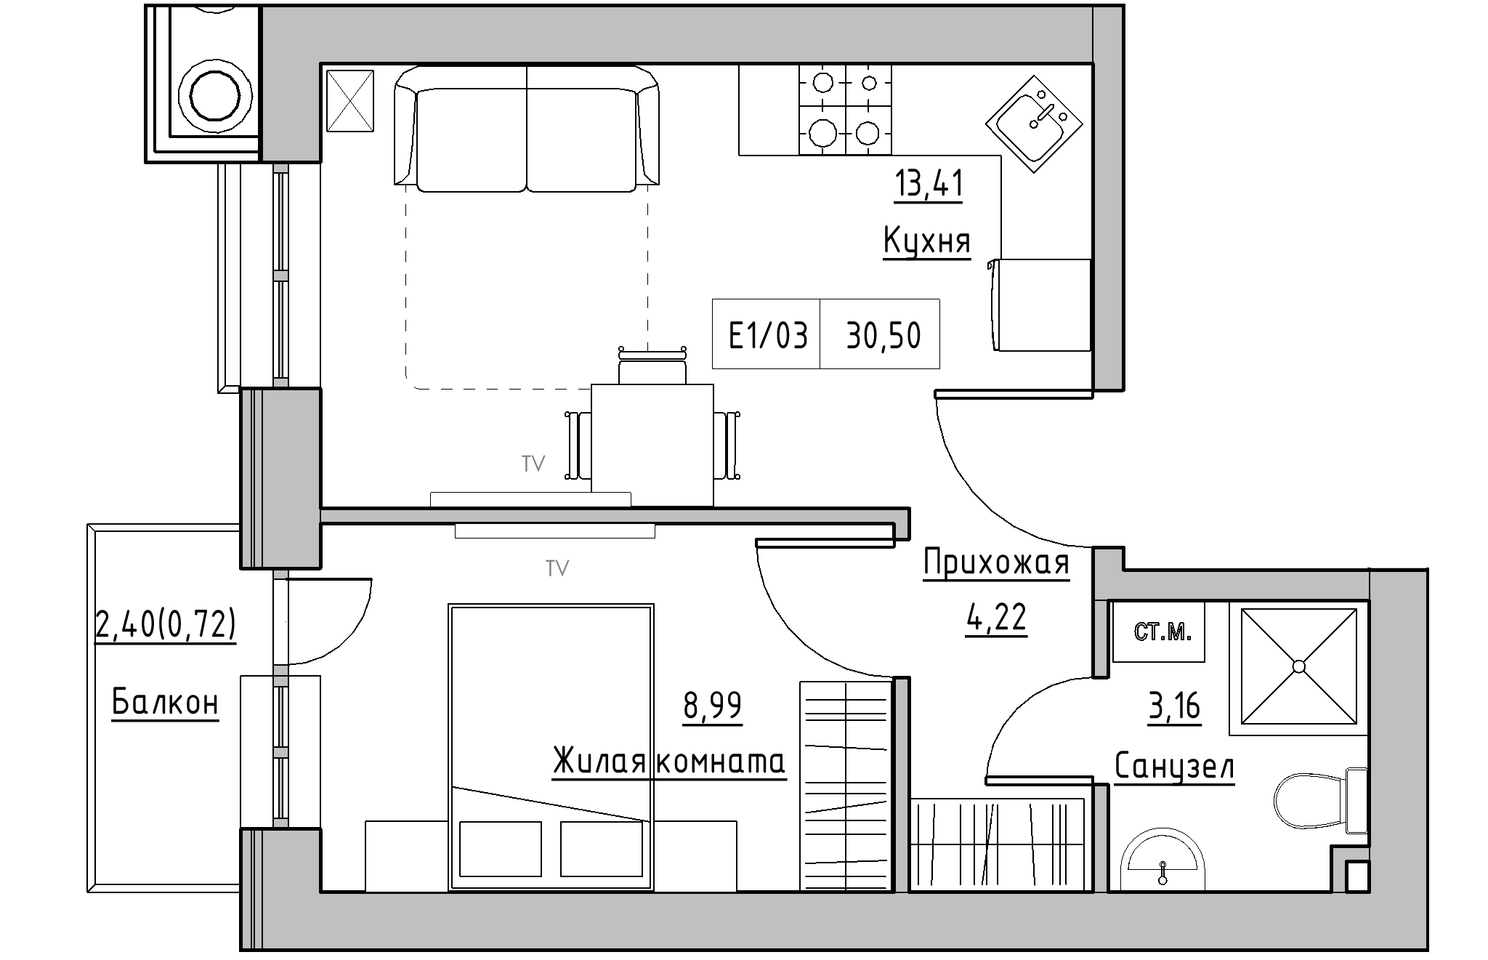 Планування 1-к квартира площею 30.5м2, KS-010-02/0012.